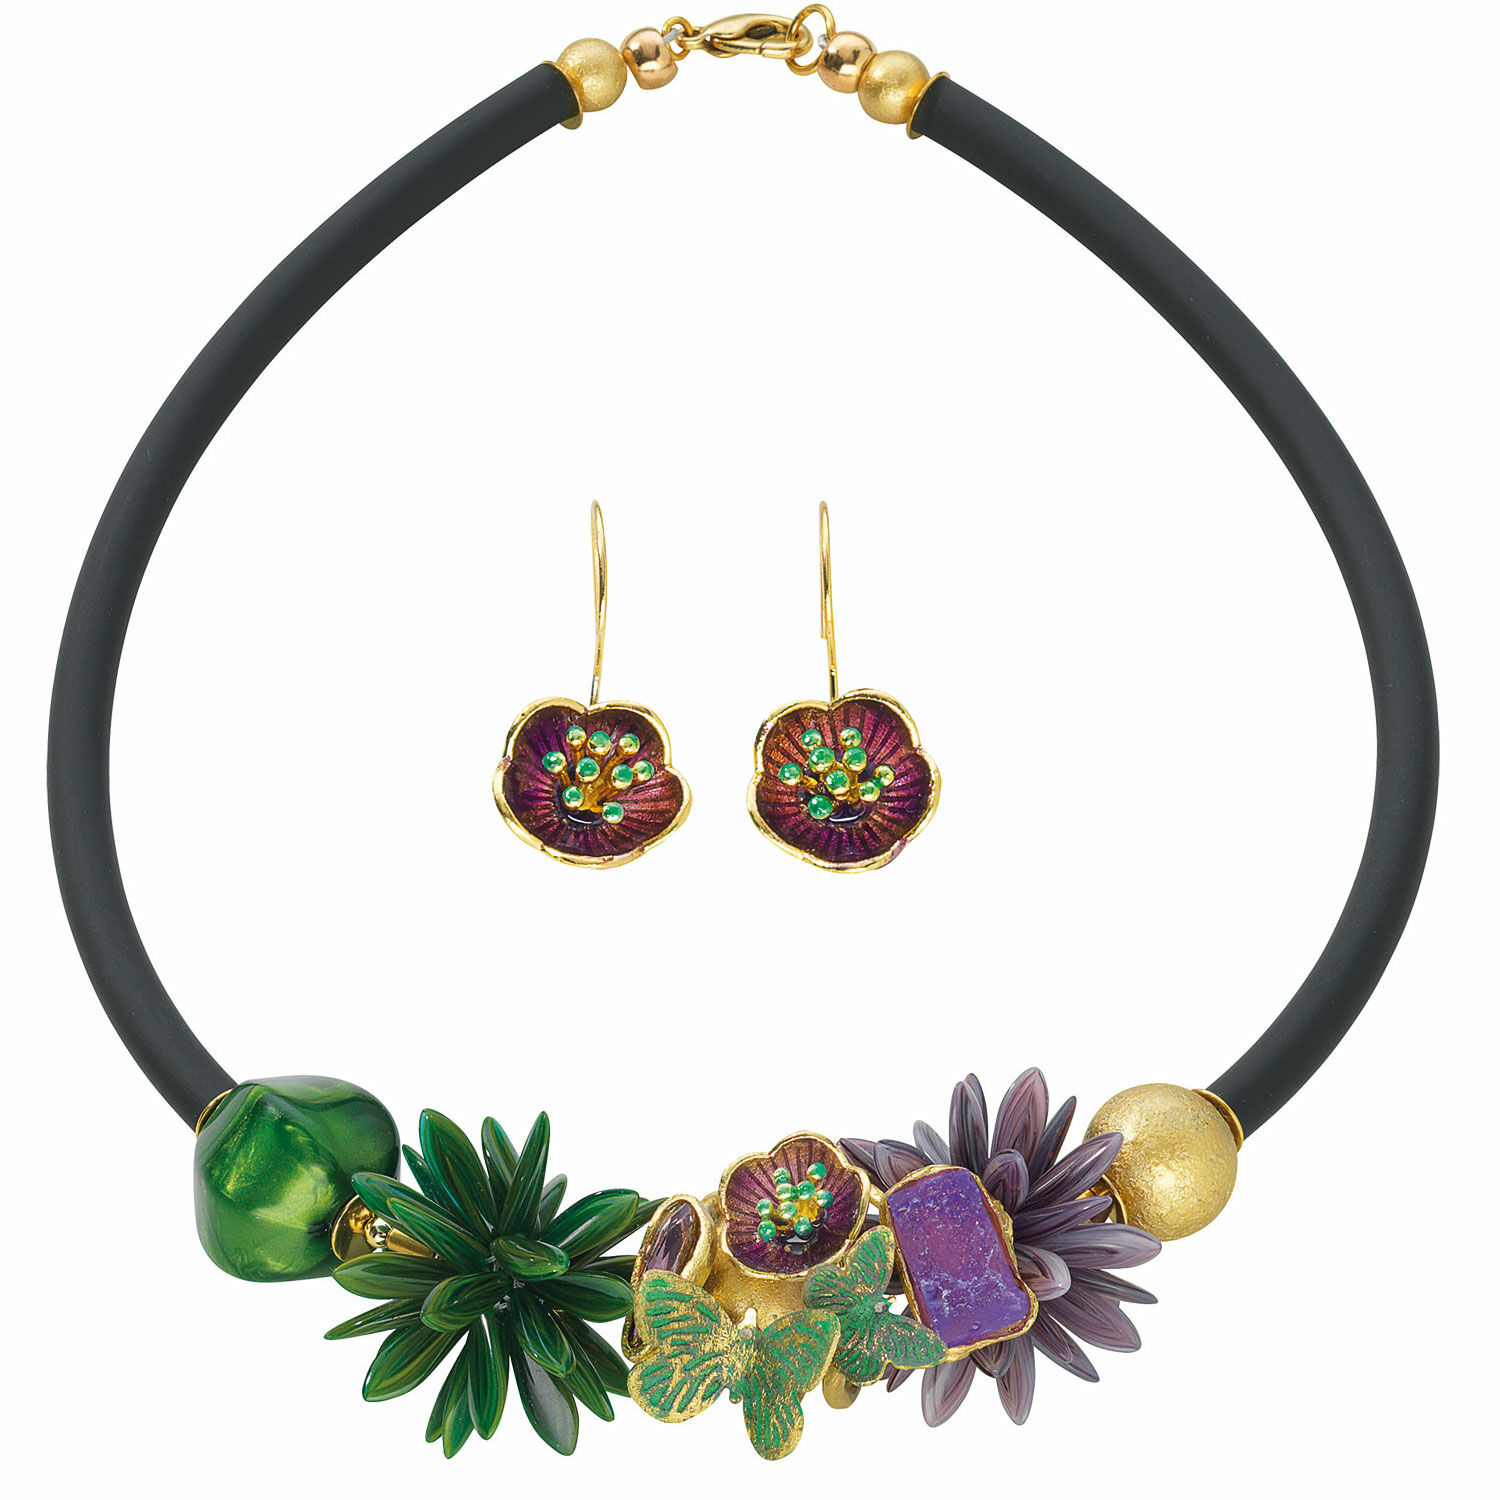 Jewellery set "Dahlia" by Anna Mütz